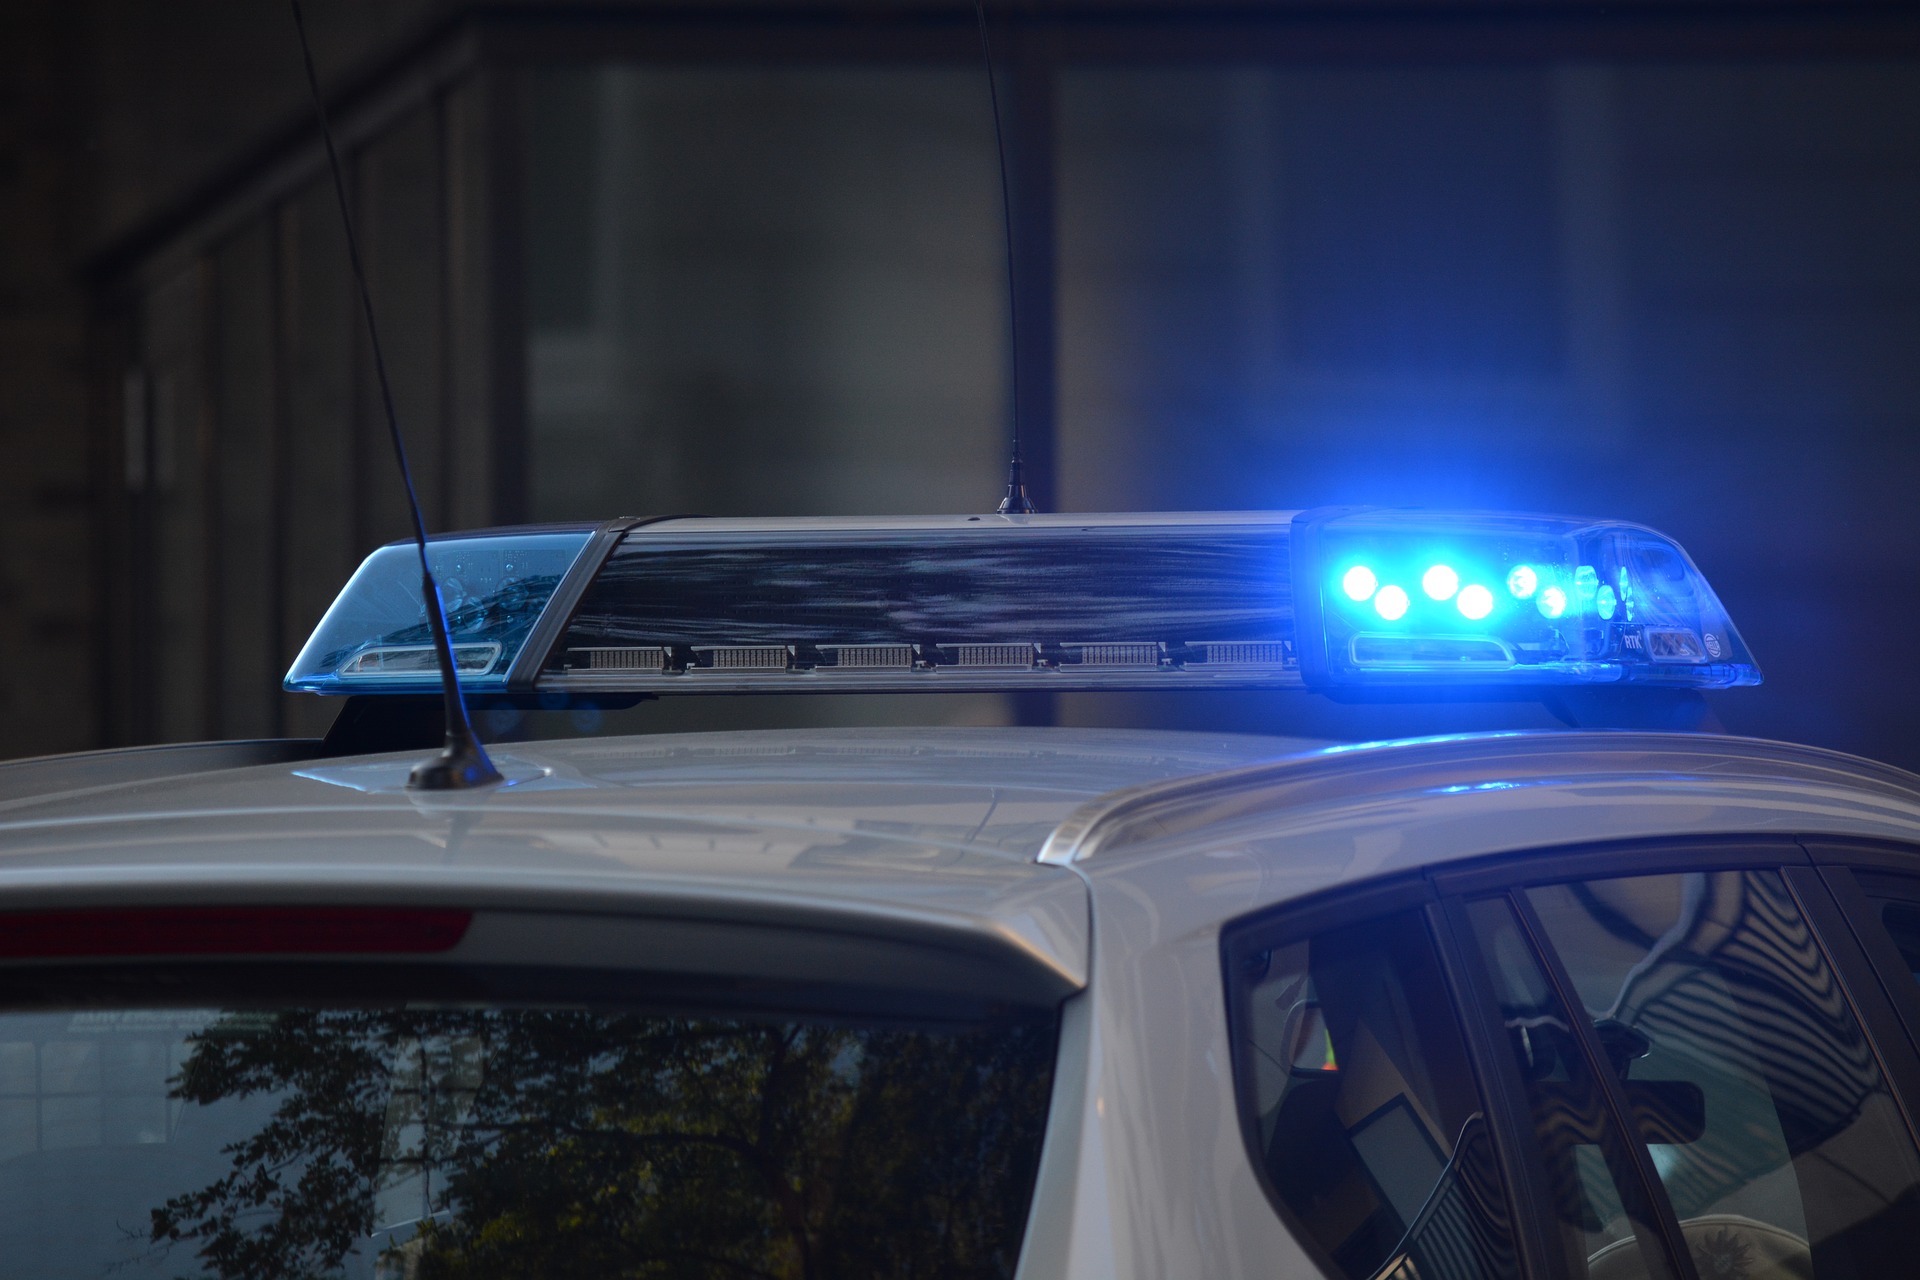 Auto della polizia, https://pixabay.com/it/photos/tecnologia-polizia-tetto-restando-2500010/ fsHH CC0